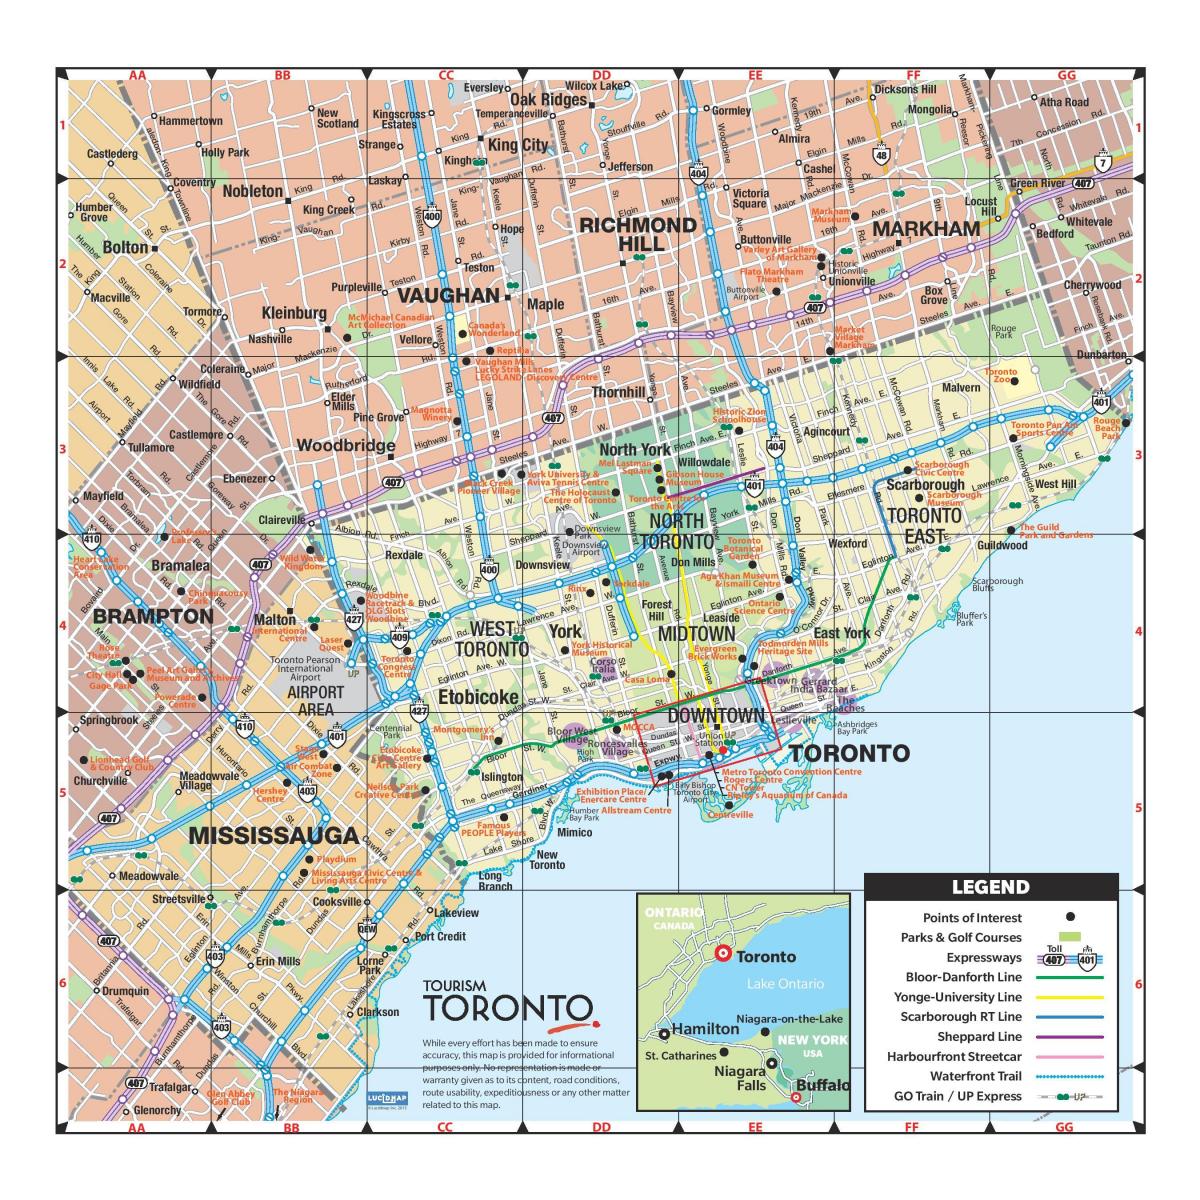 Mapa da Turísticas de Toronto